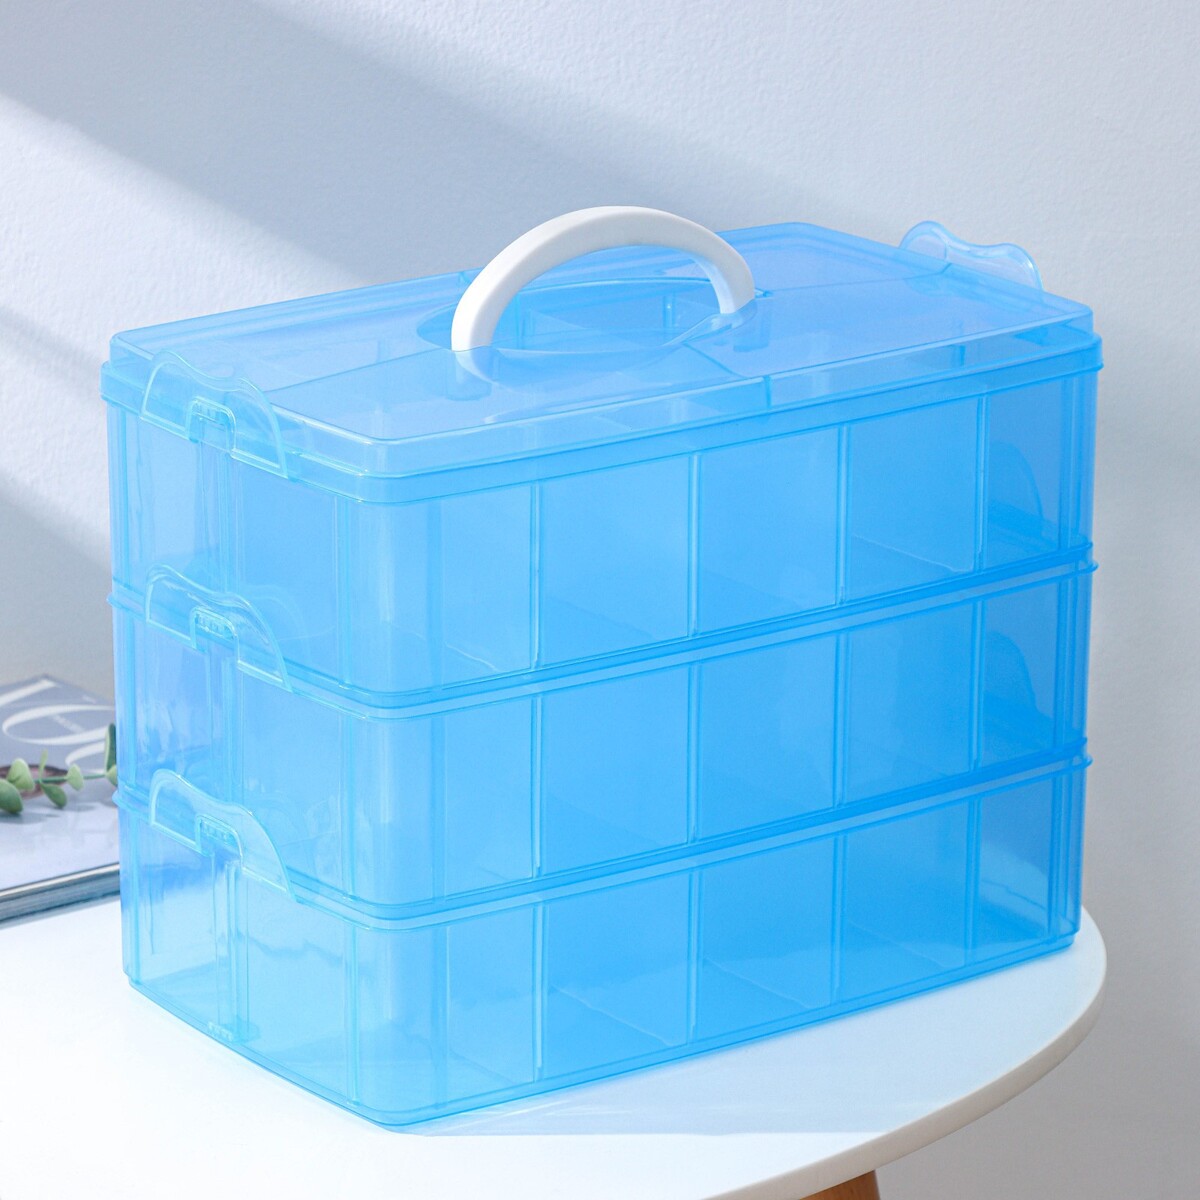 Органайзер для хранения пластиковый, 3 яруса, 30 отделений, 32×18×24 см, цвет голубой